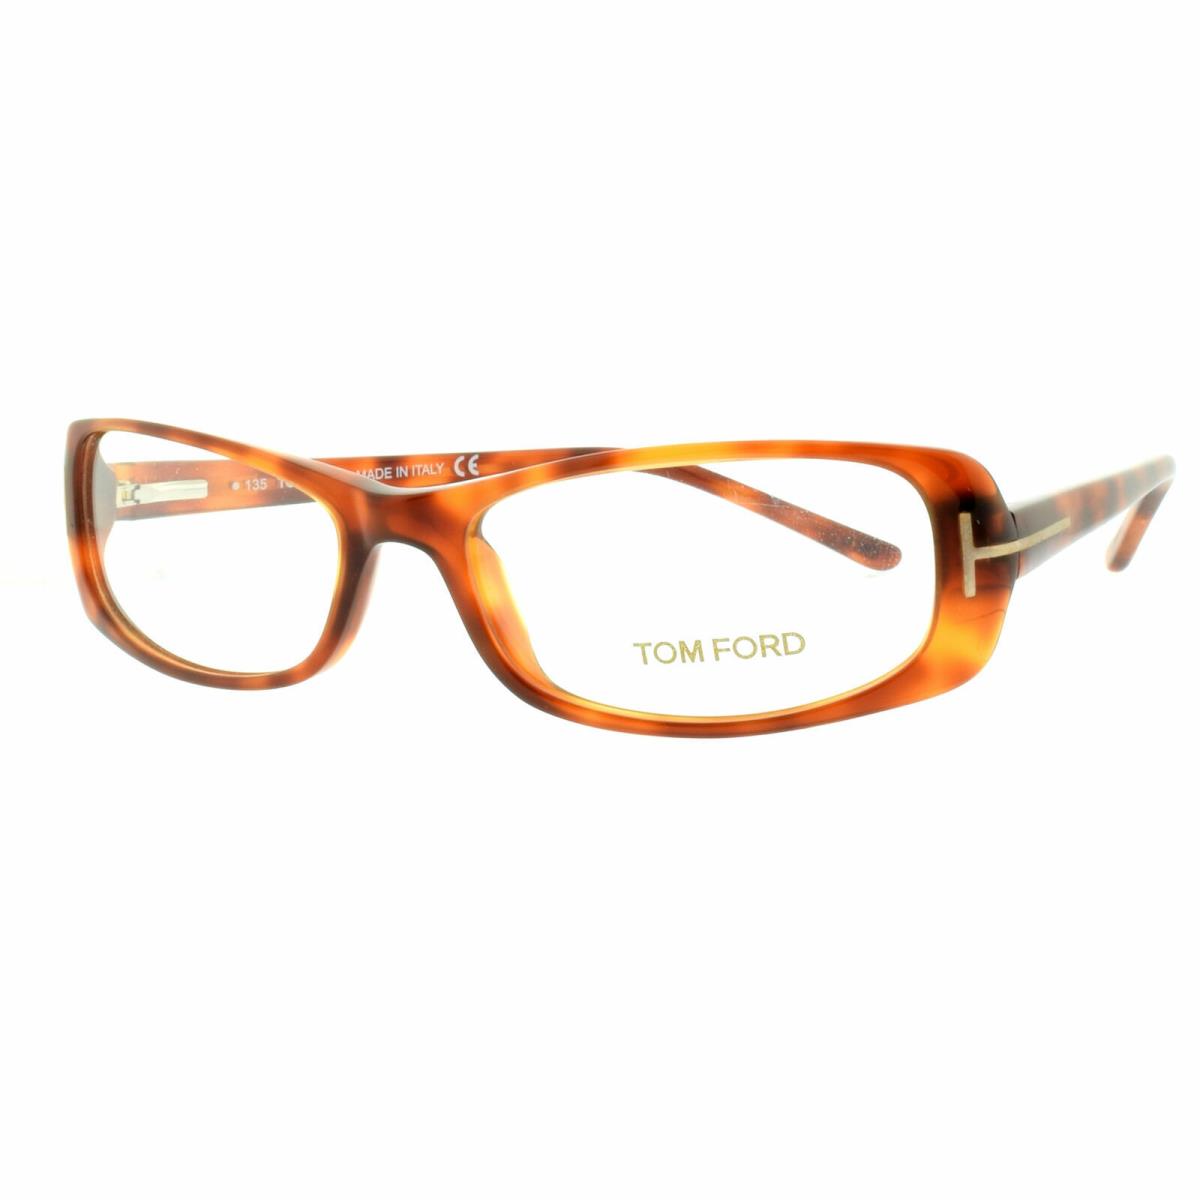 Tom Ford FT5121 053 Havana Rectangular Optical Frames Eyeglasses